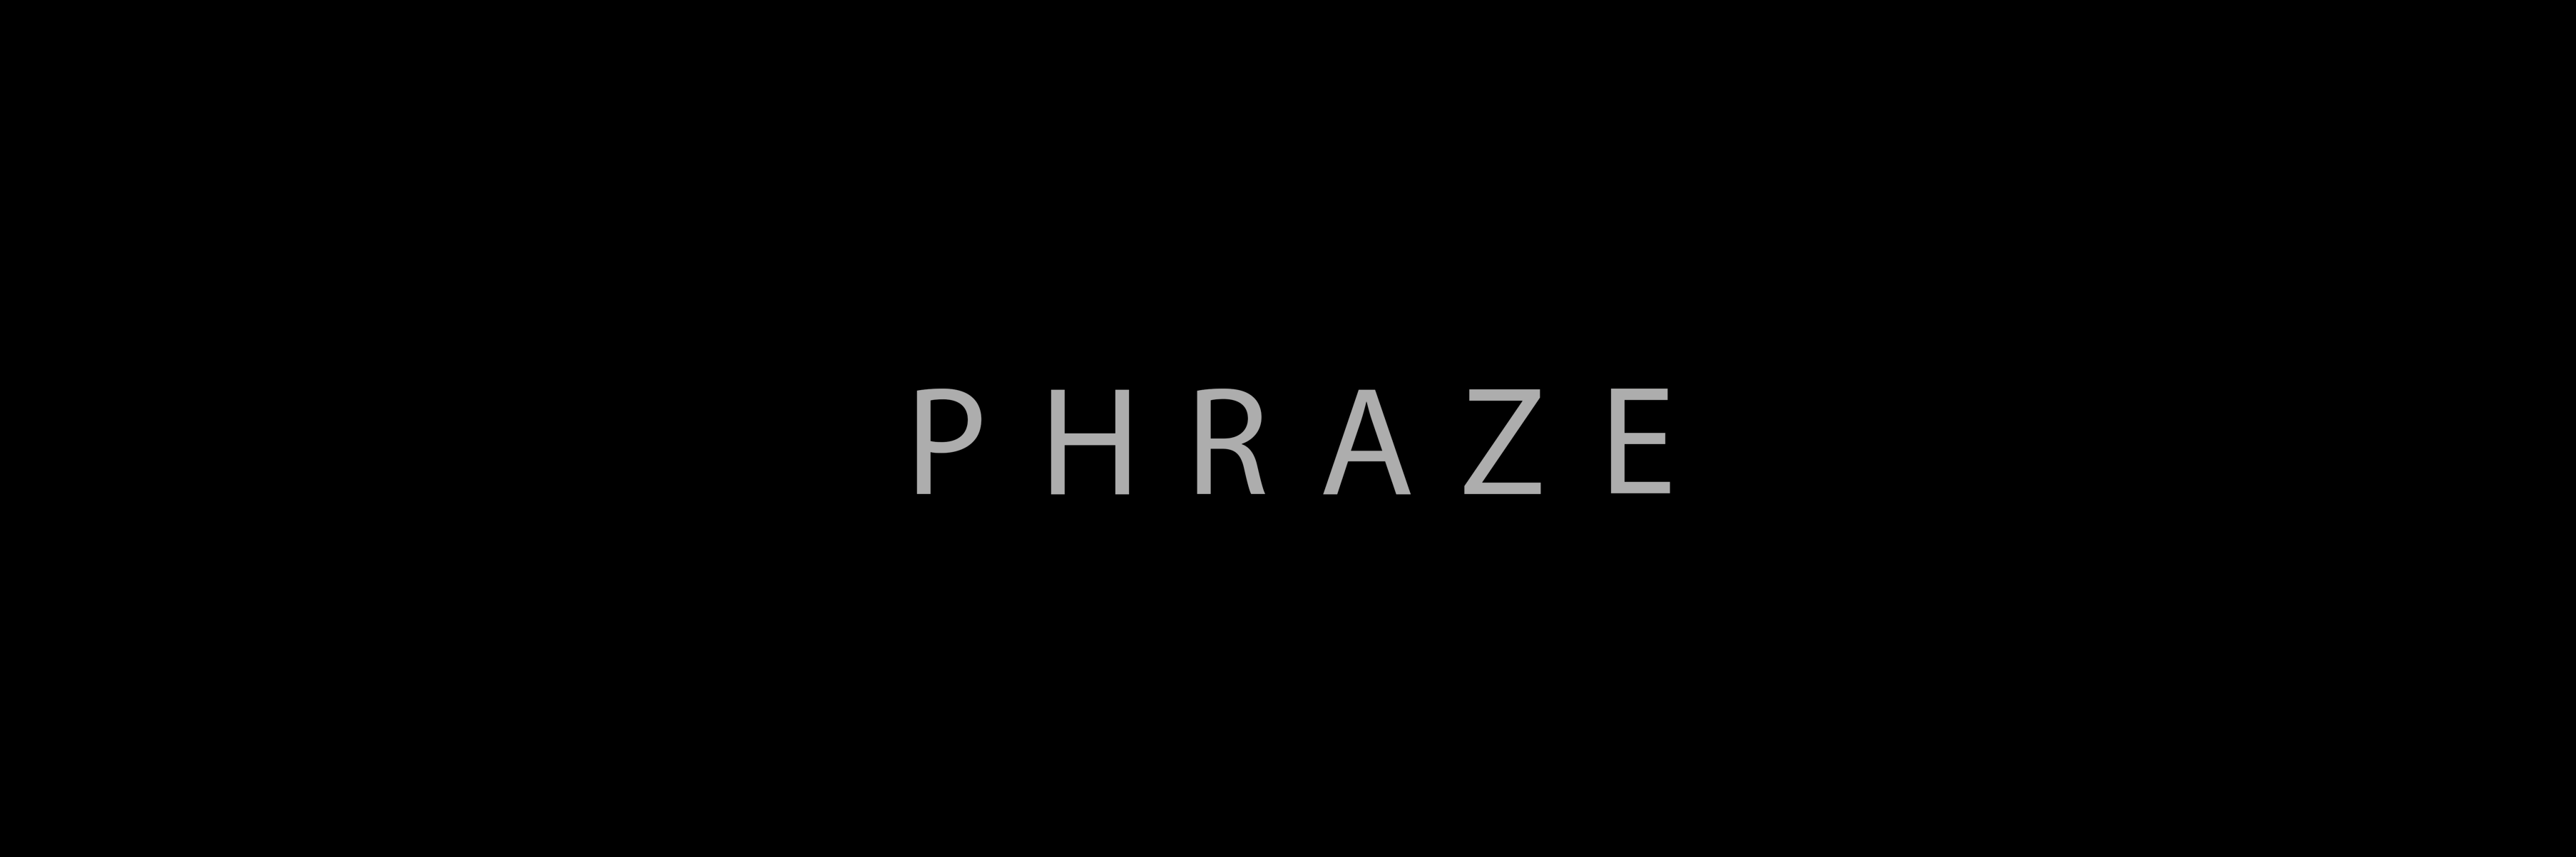 The Phraze